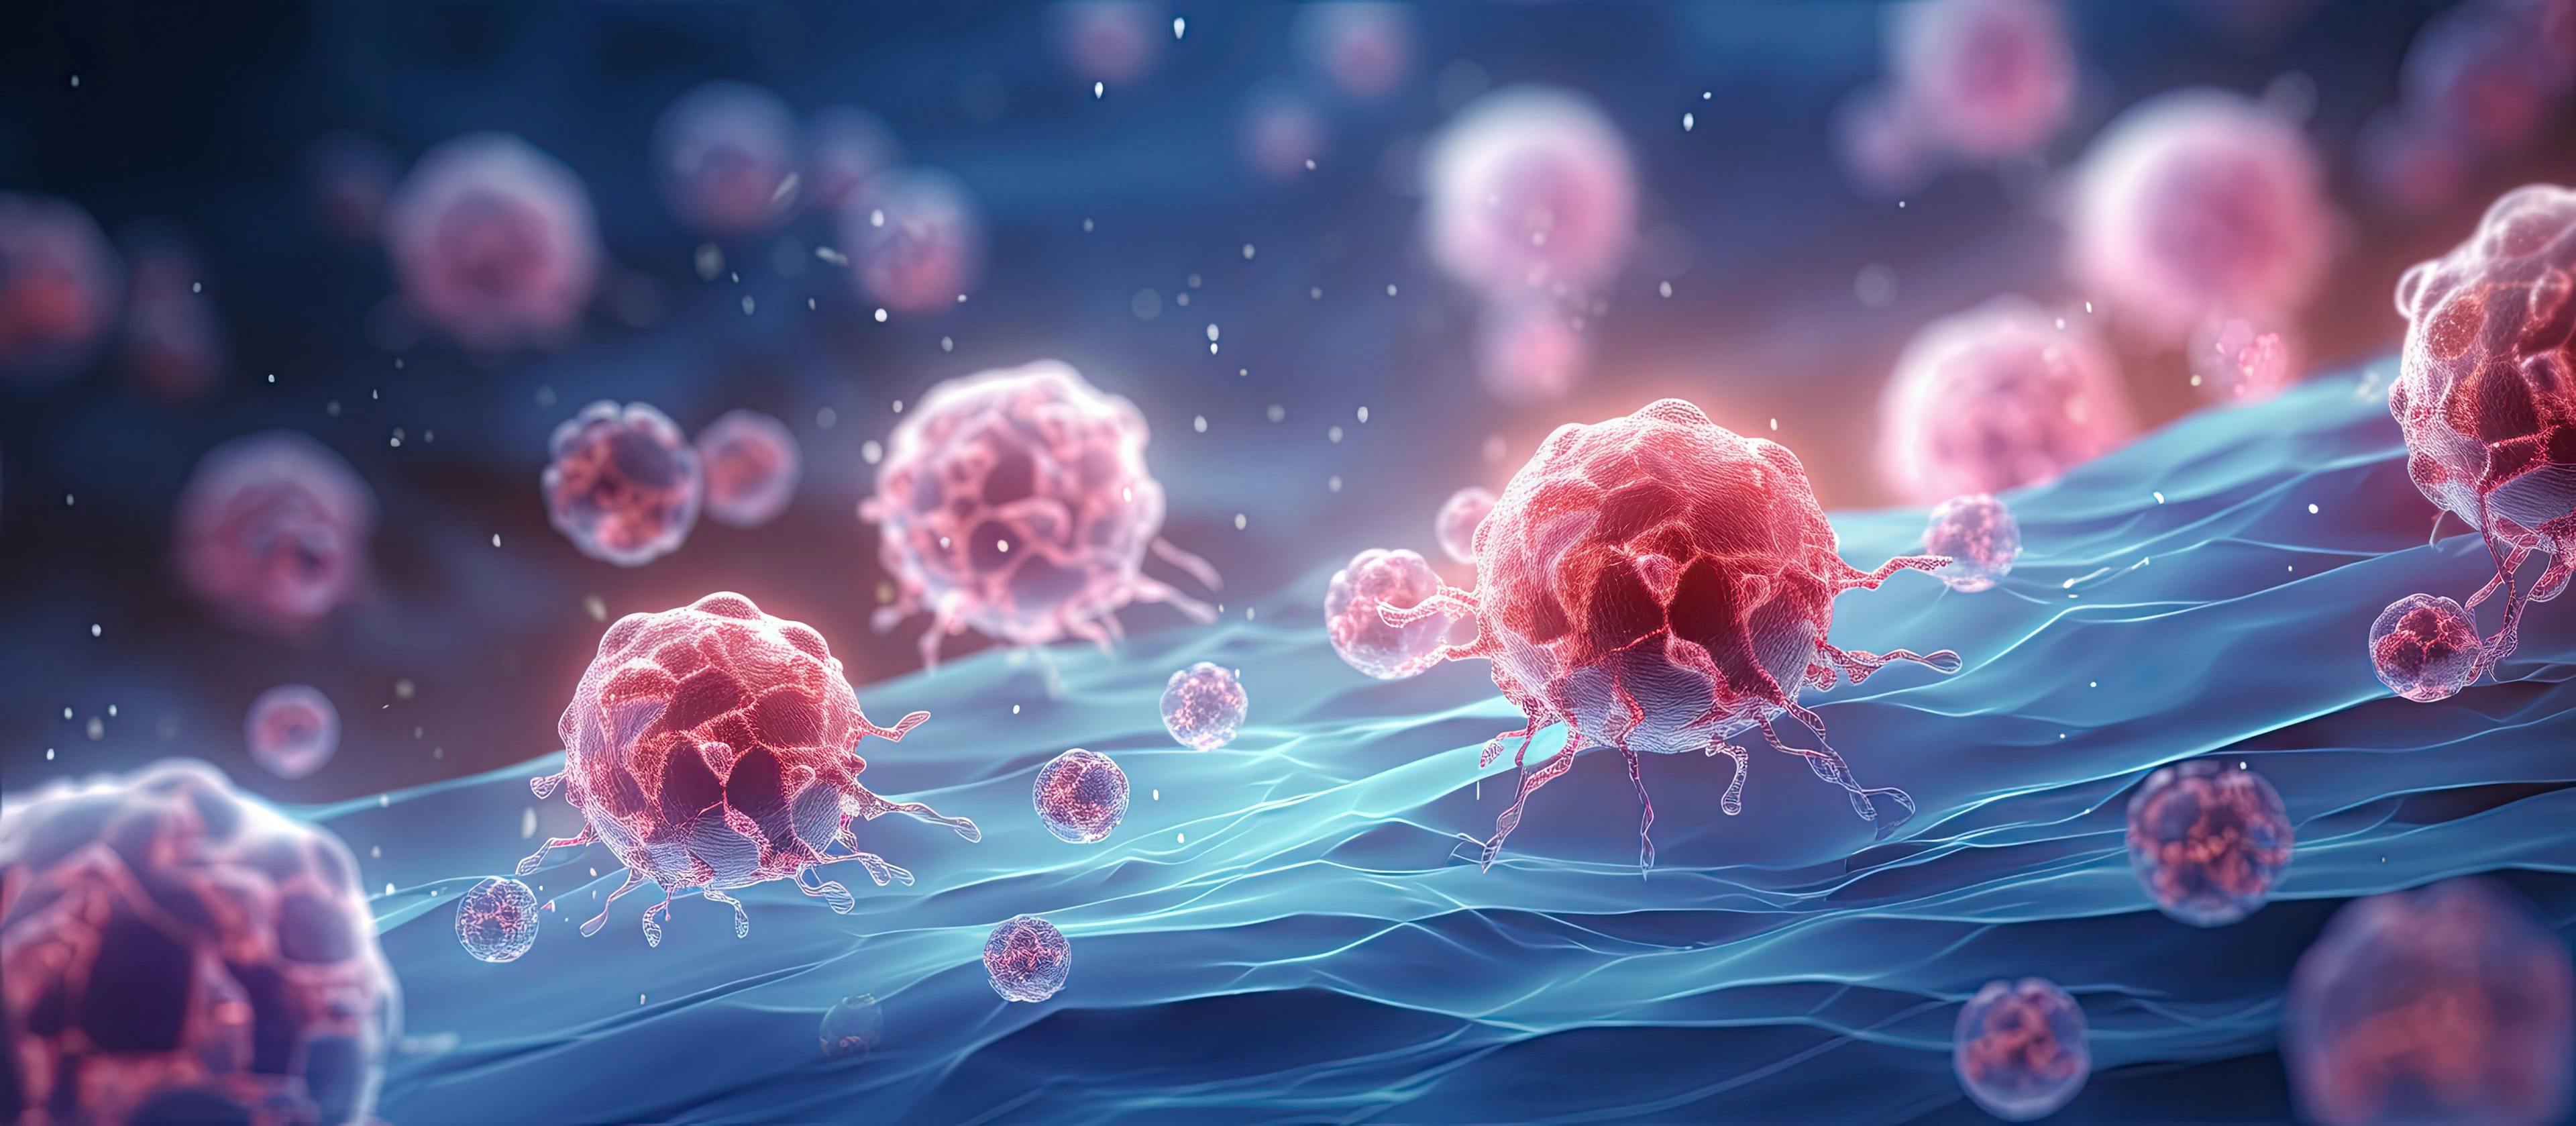 Illustration of cancer cells in 3D: Image credit: Vusal | stock.adobe.com